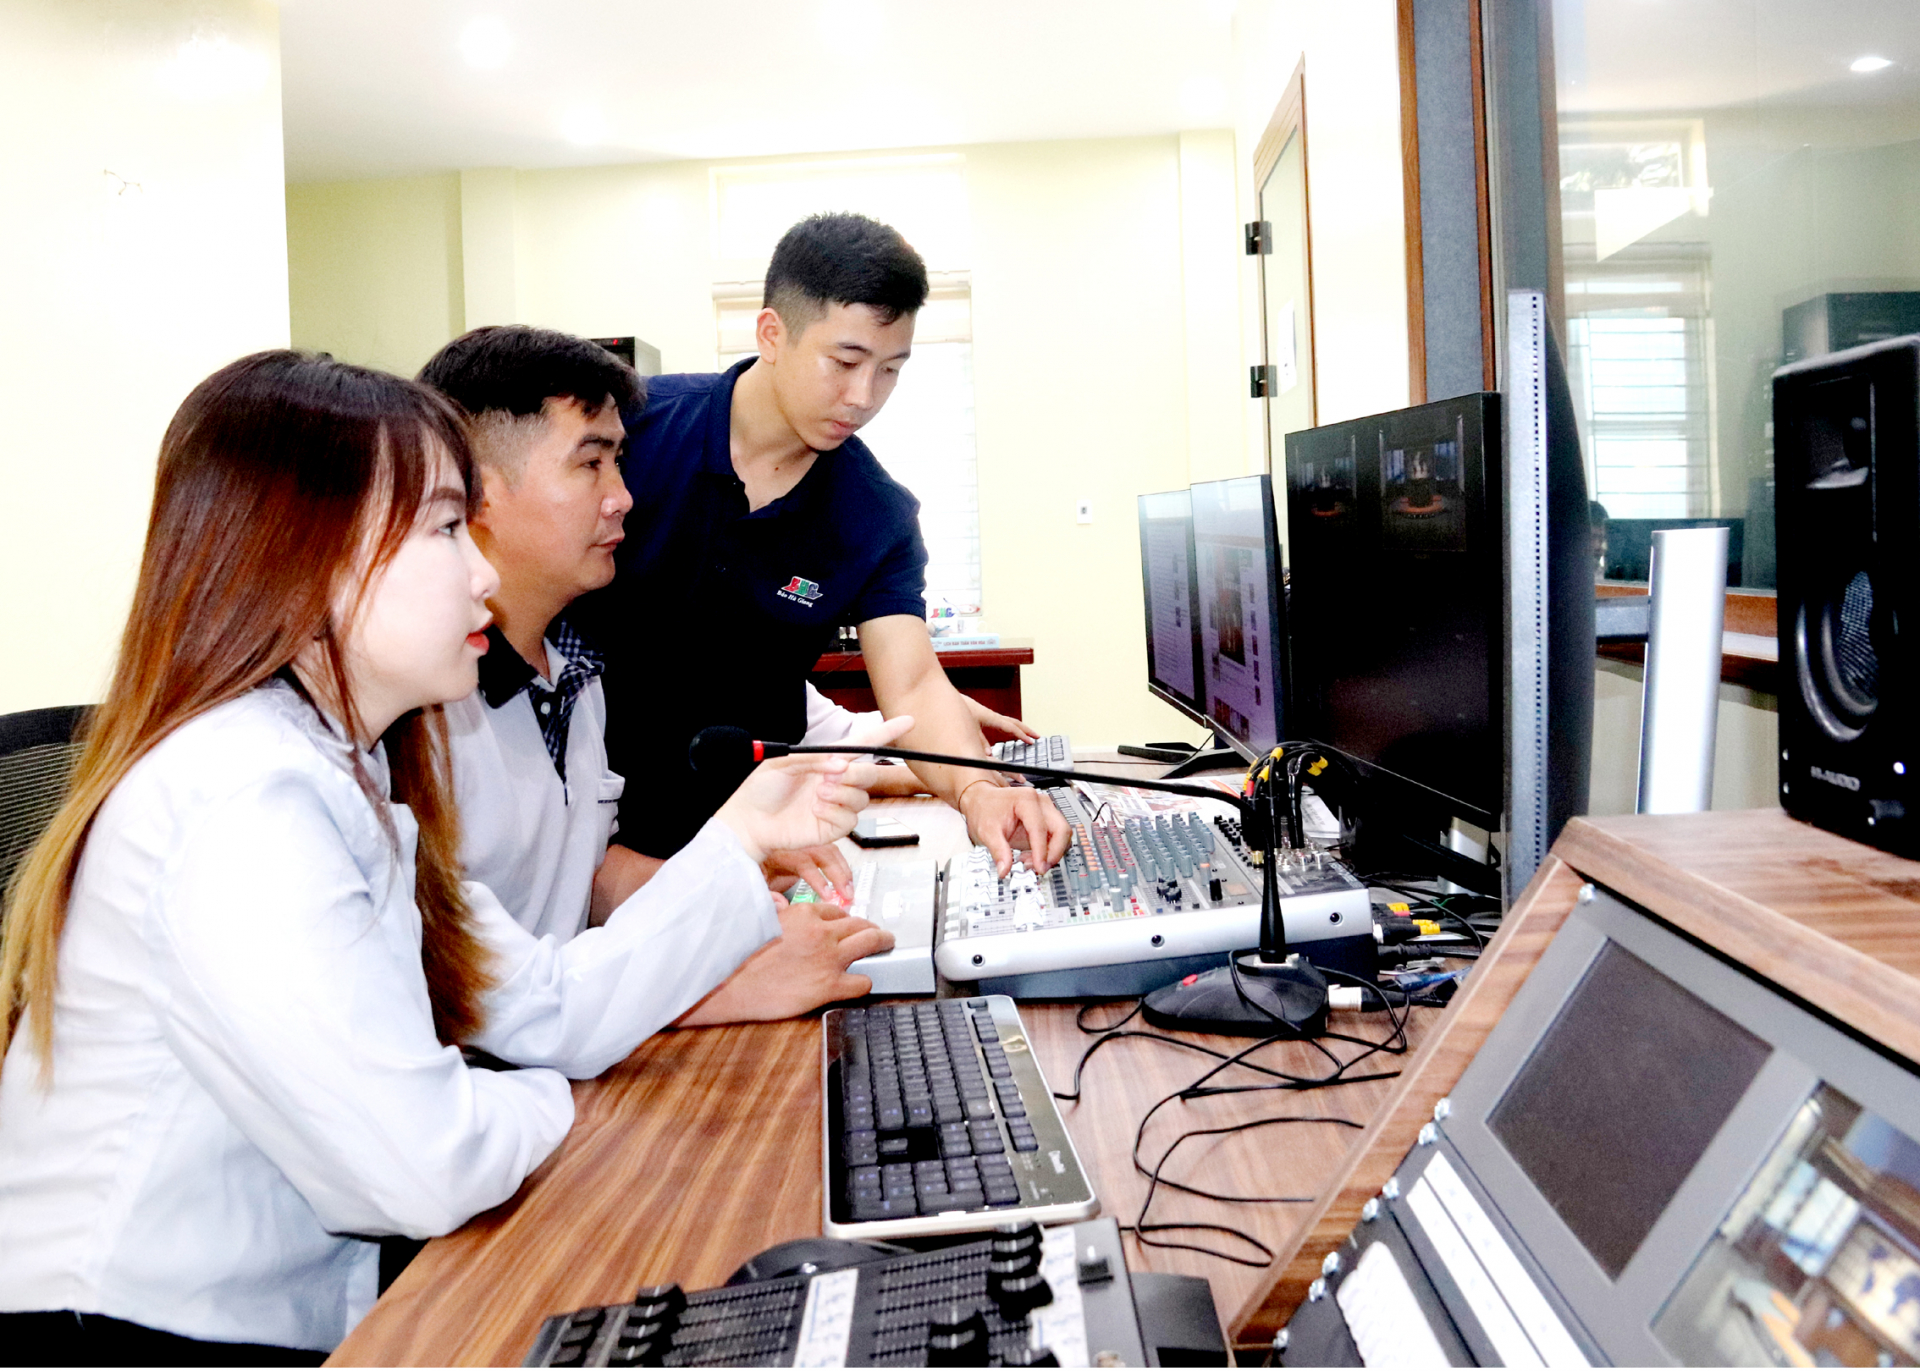 Báo Hà Giang được đầu tư trang thiết bị hiện đại đáp ứng yêu cầu chuyển đổi số báo chí.
